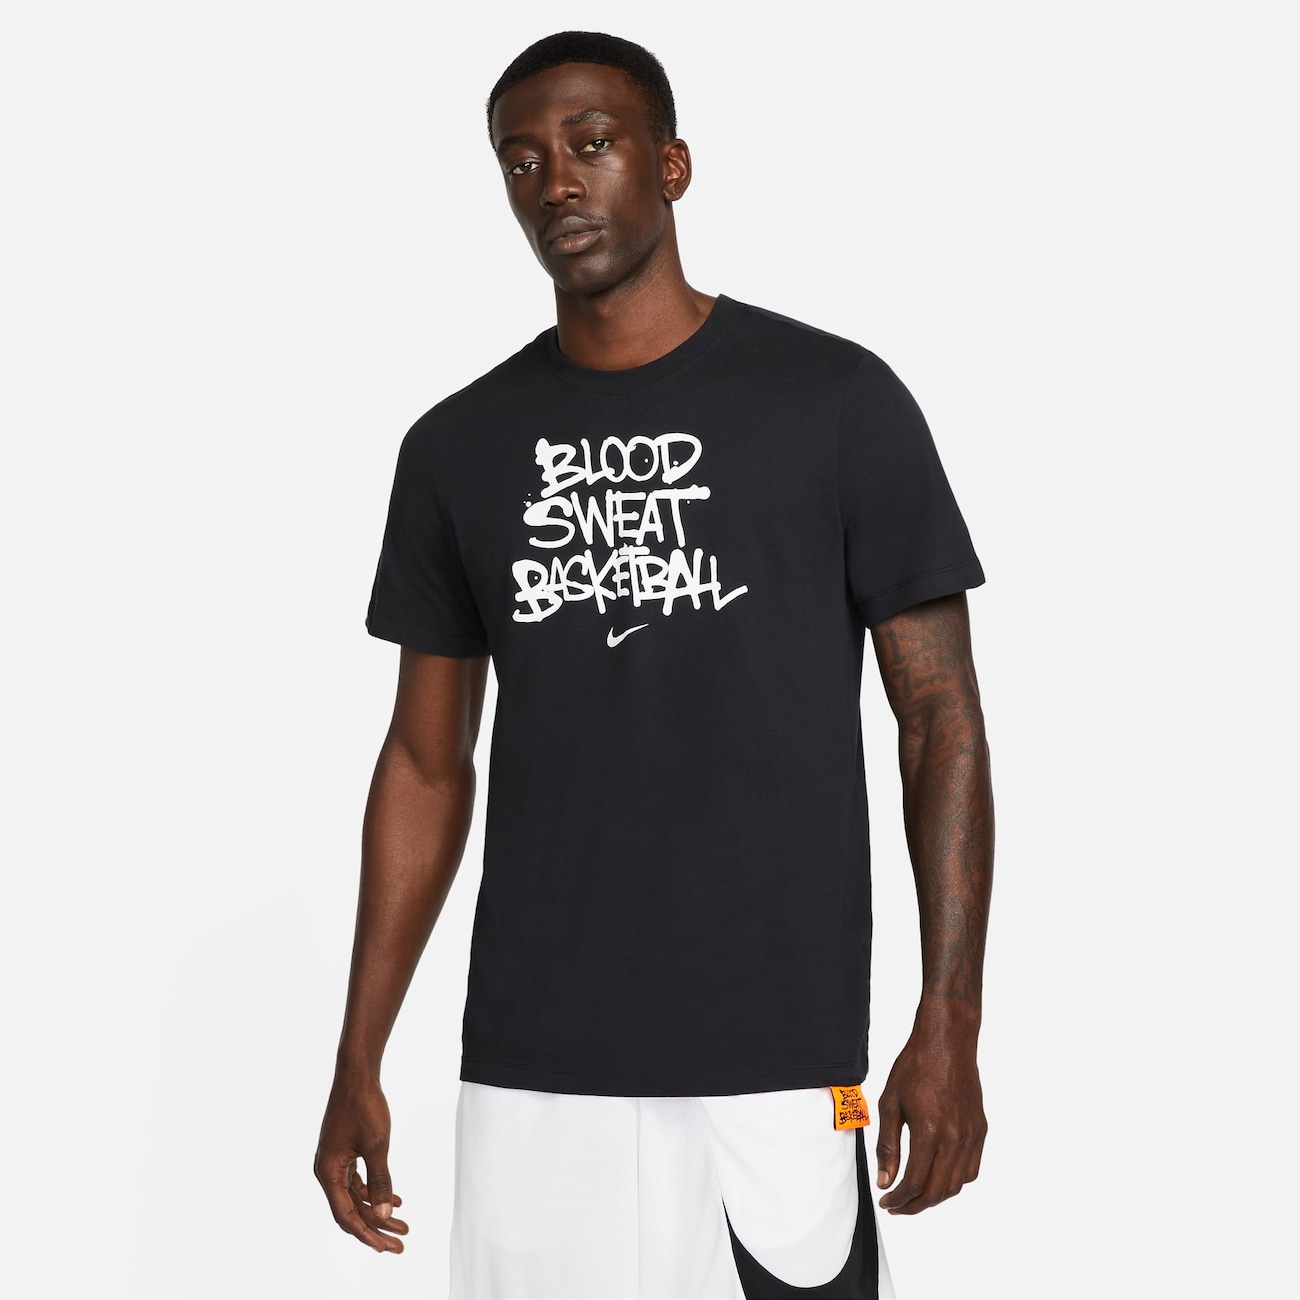 Camiseta Nike Dri-FIT "Blood, Sweat, Basketball" Masculina - Foto 1